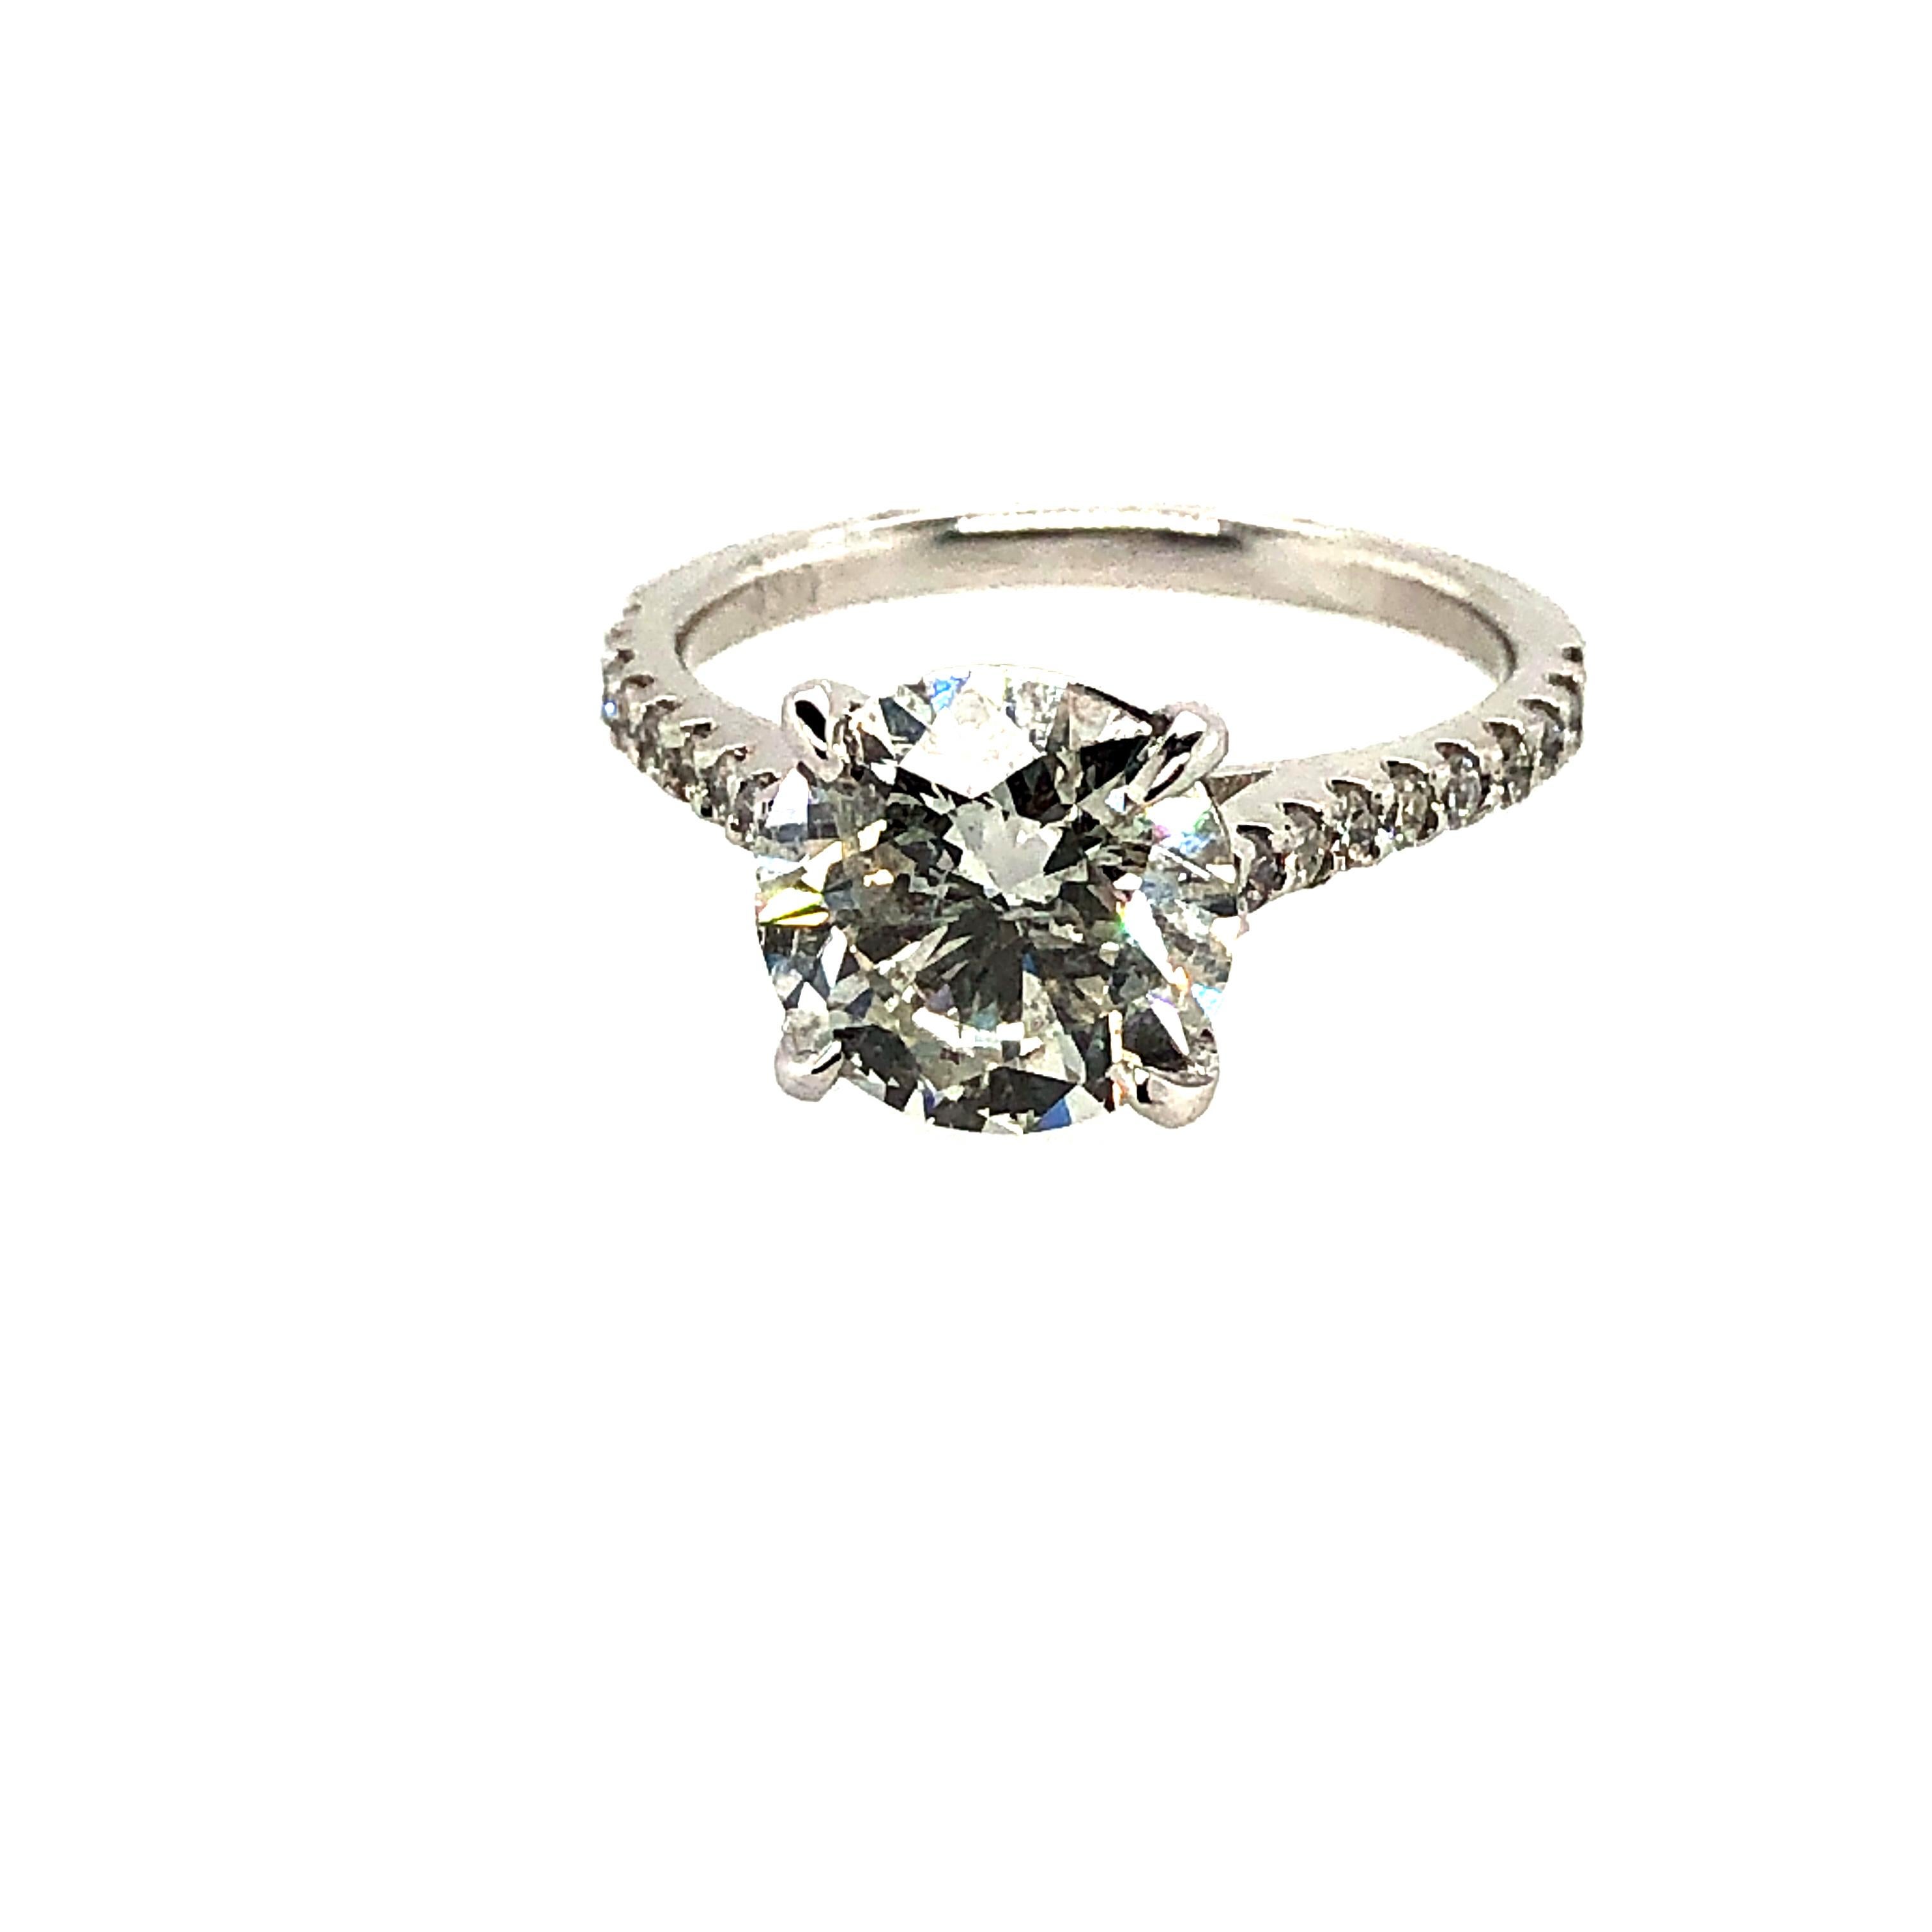 3.04 Carat Diamond Engagement Ring Platinum 5